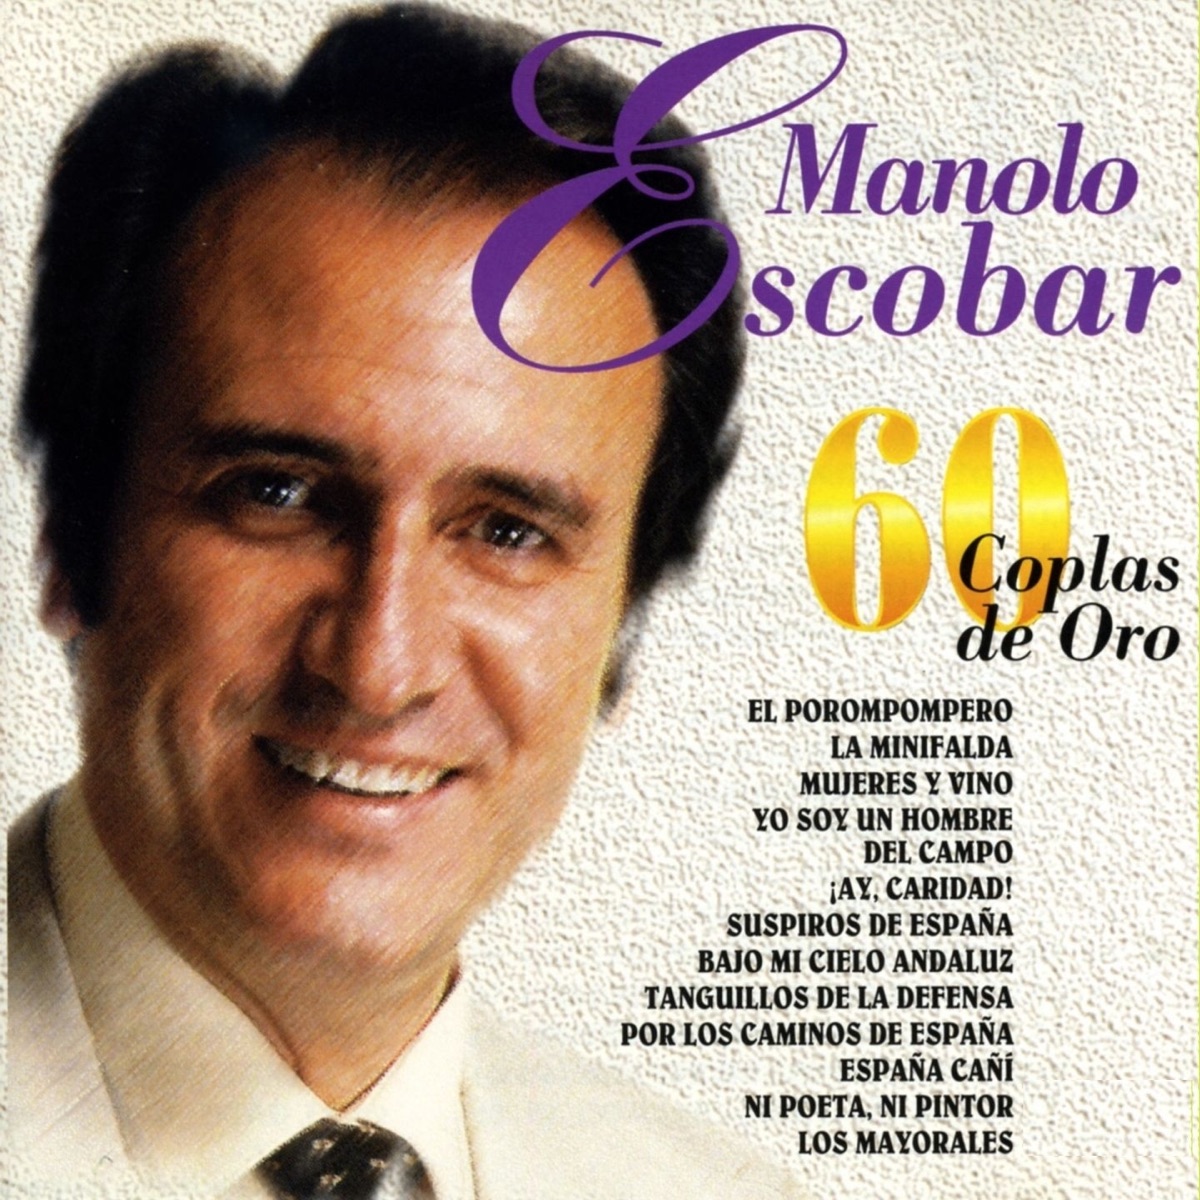 ‎60 Coplas de Oro de Manolo Escobar en Apple Music